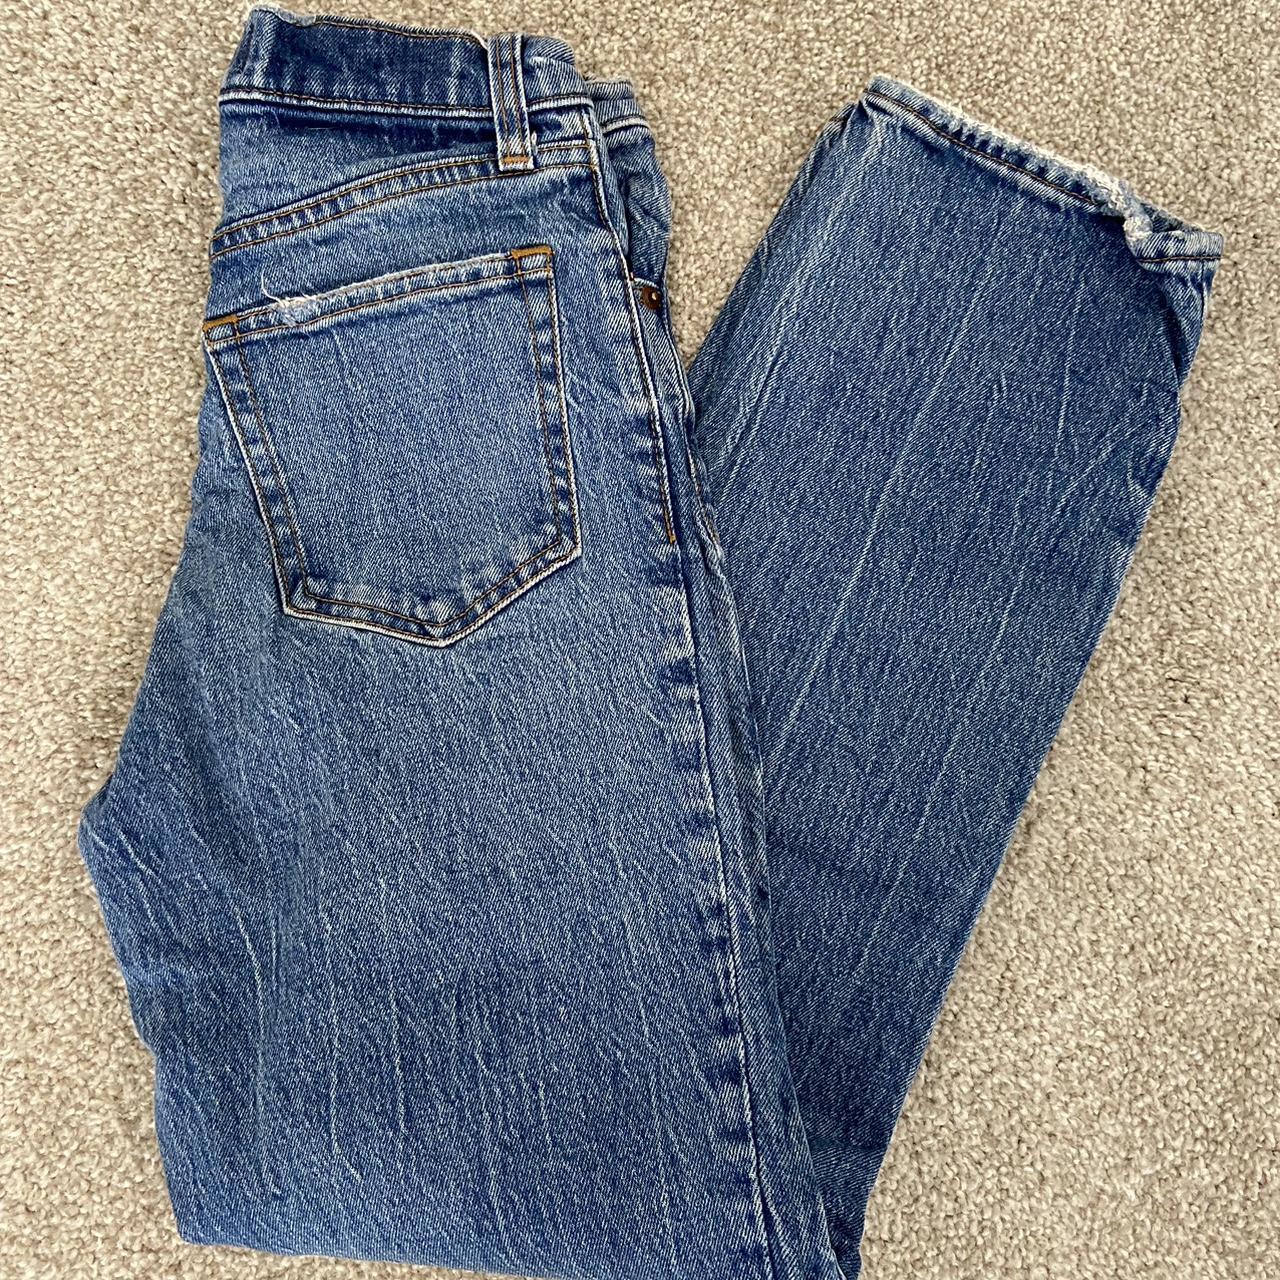 Abercrombie & Fitch Women's Blue Jeans | Depop